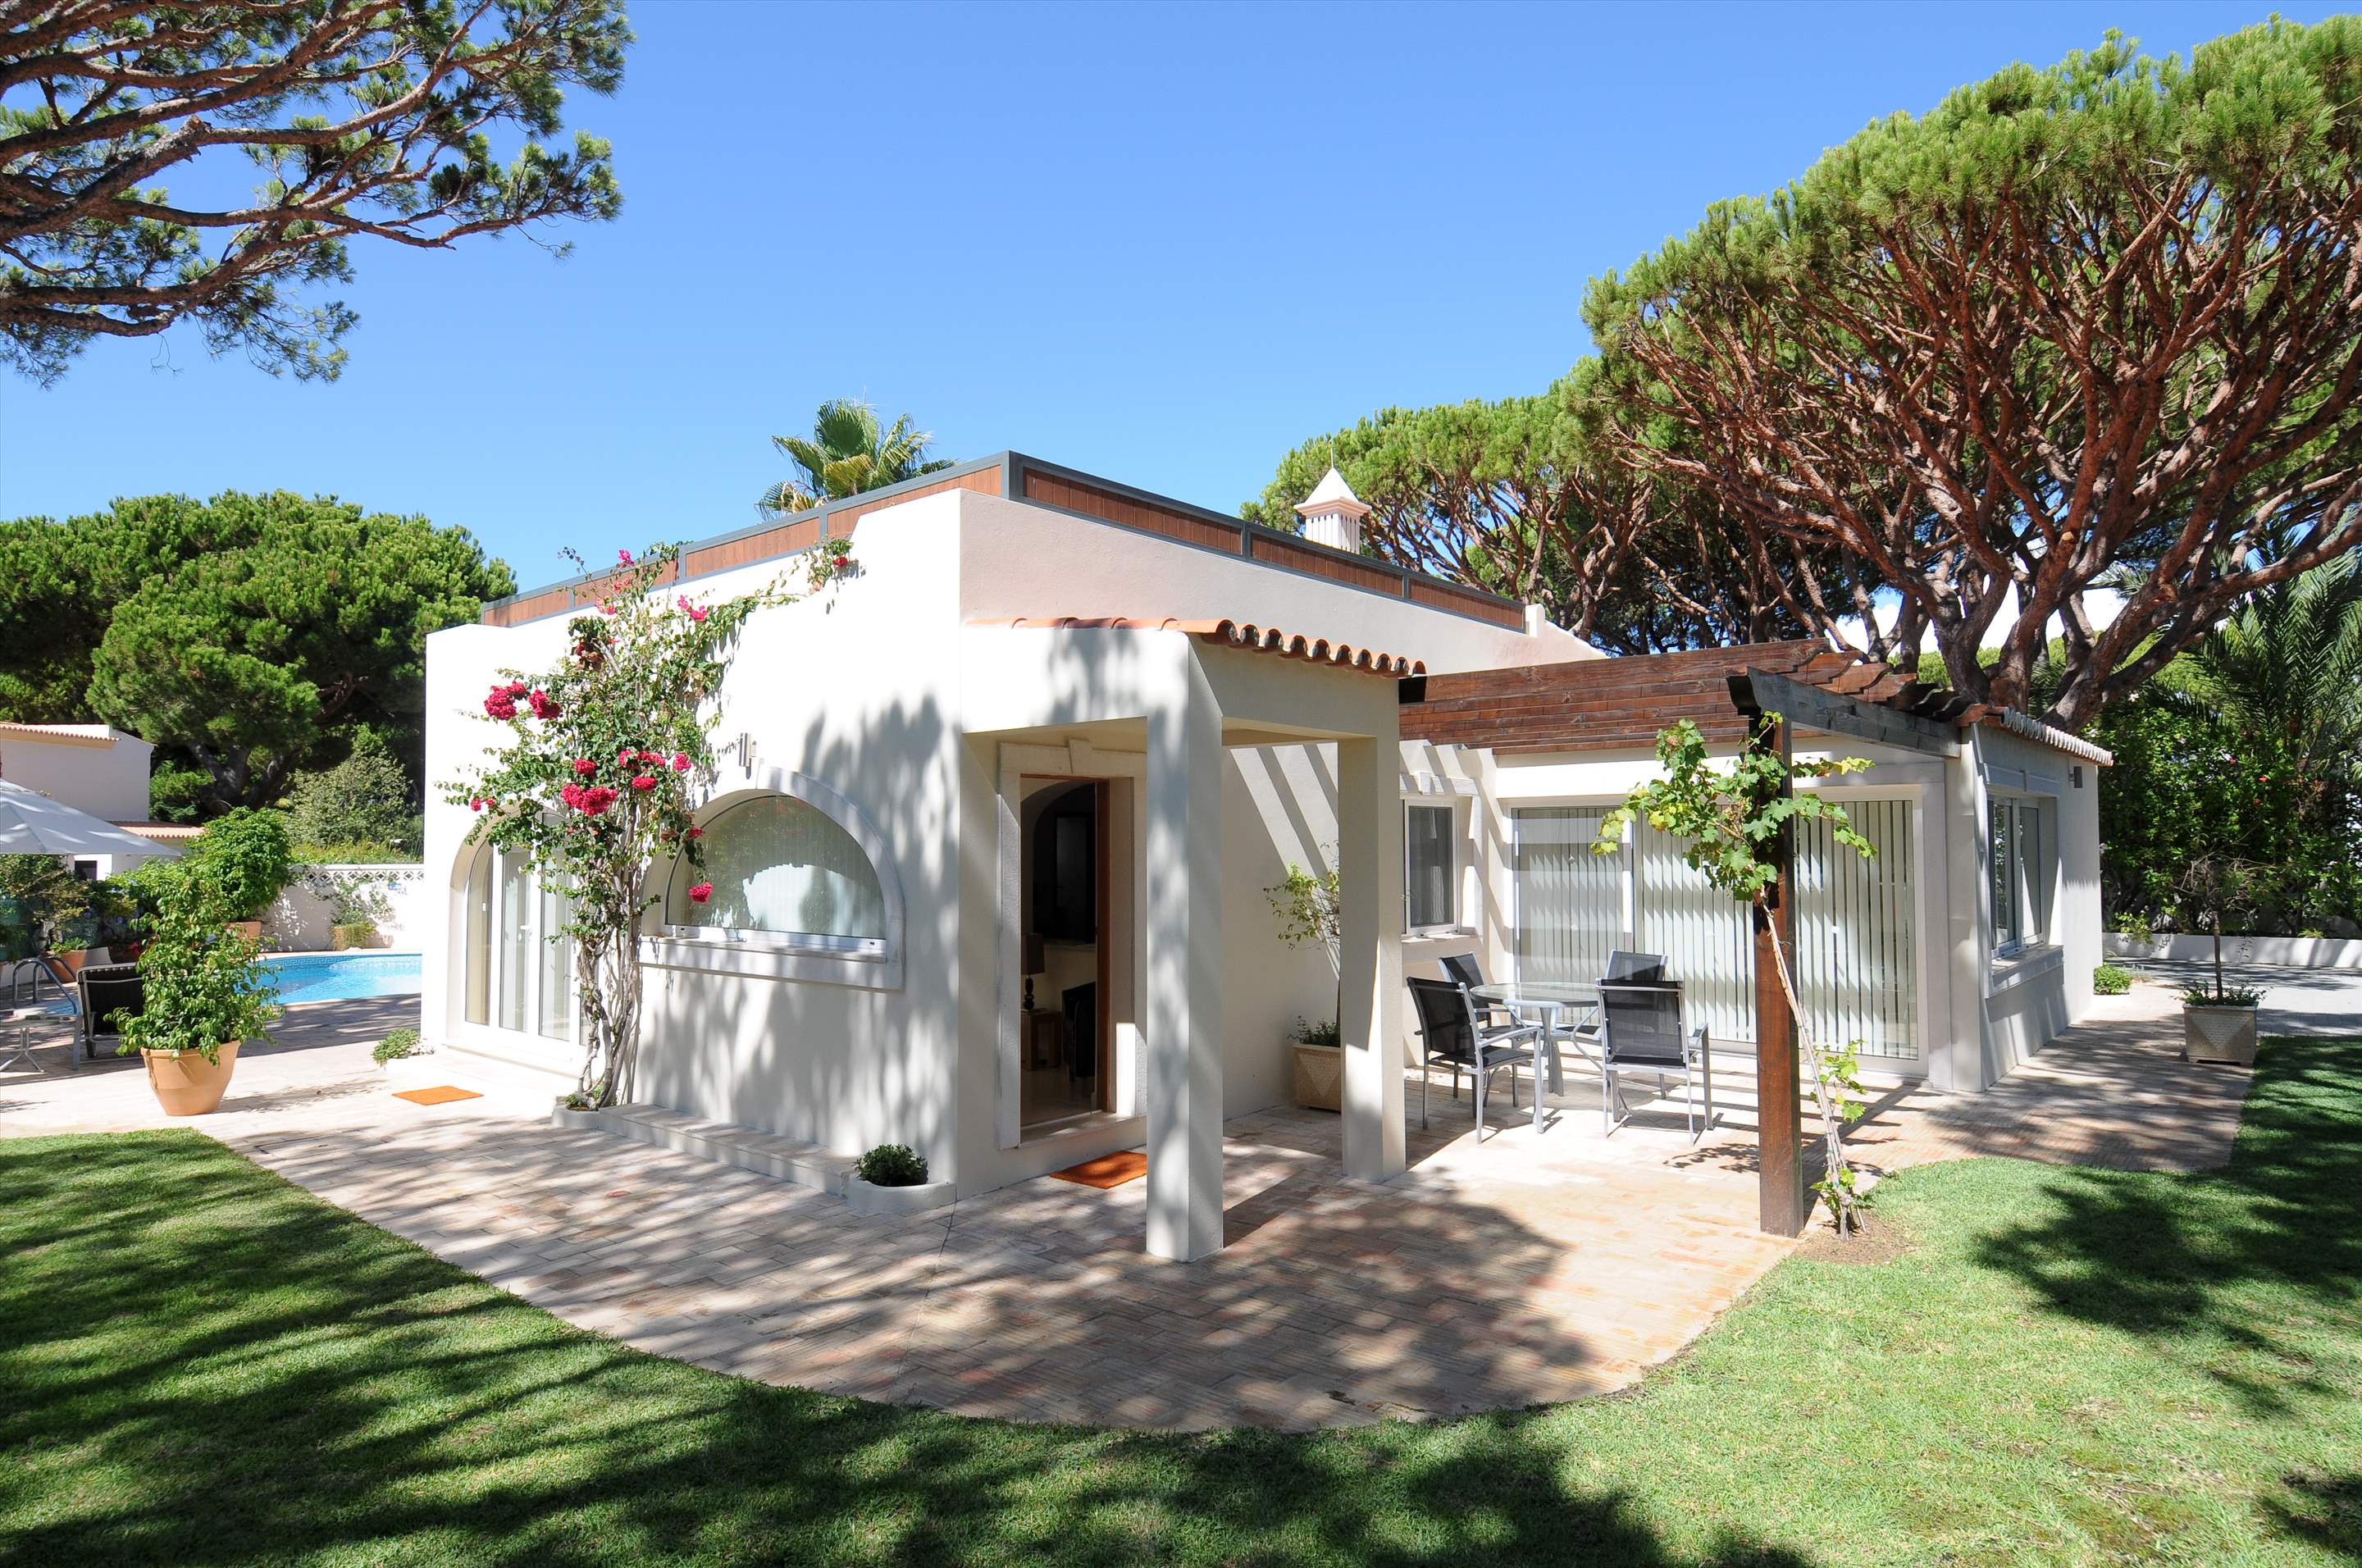 Casa Blanca, 4 Bed Rental, 4 bedroom villa in Vale do Lobo, Algarve Photo #2